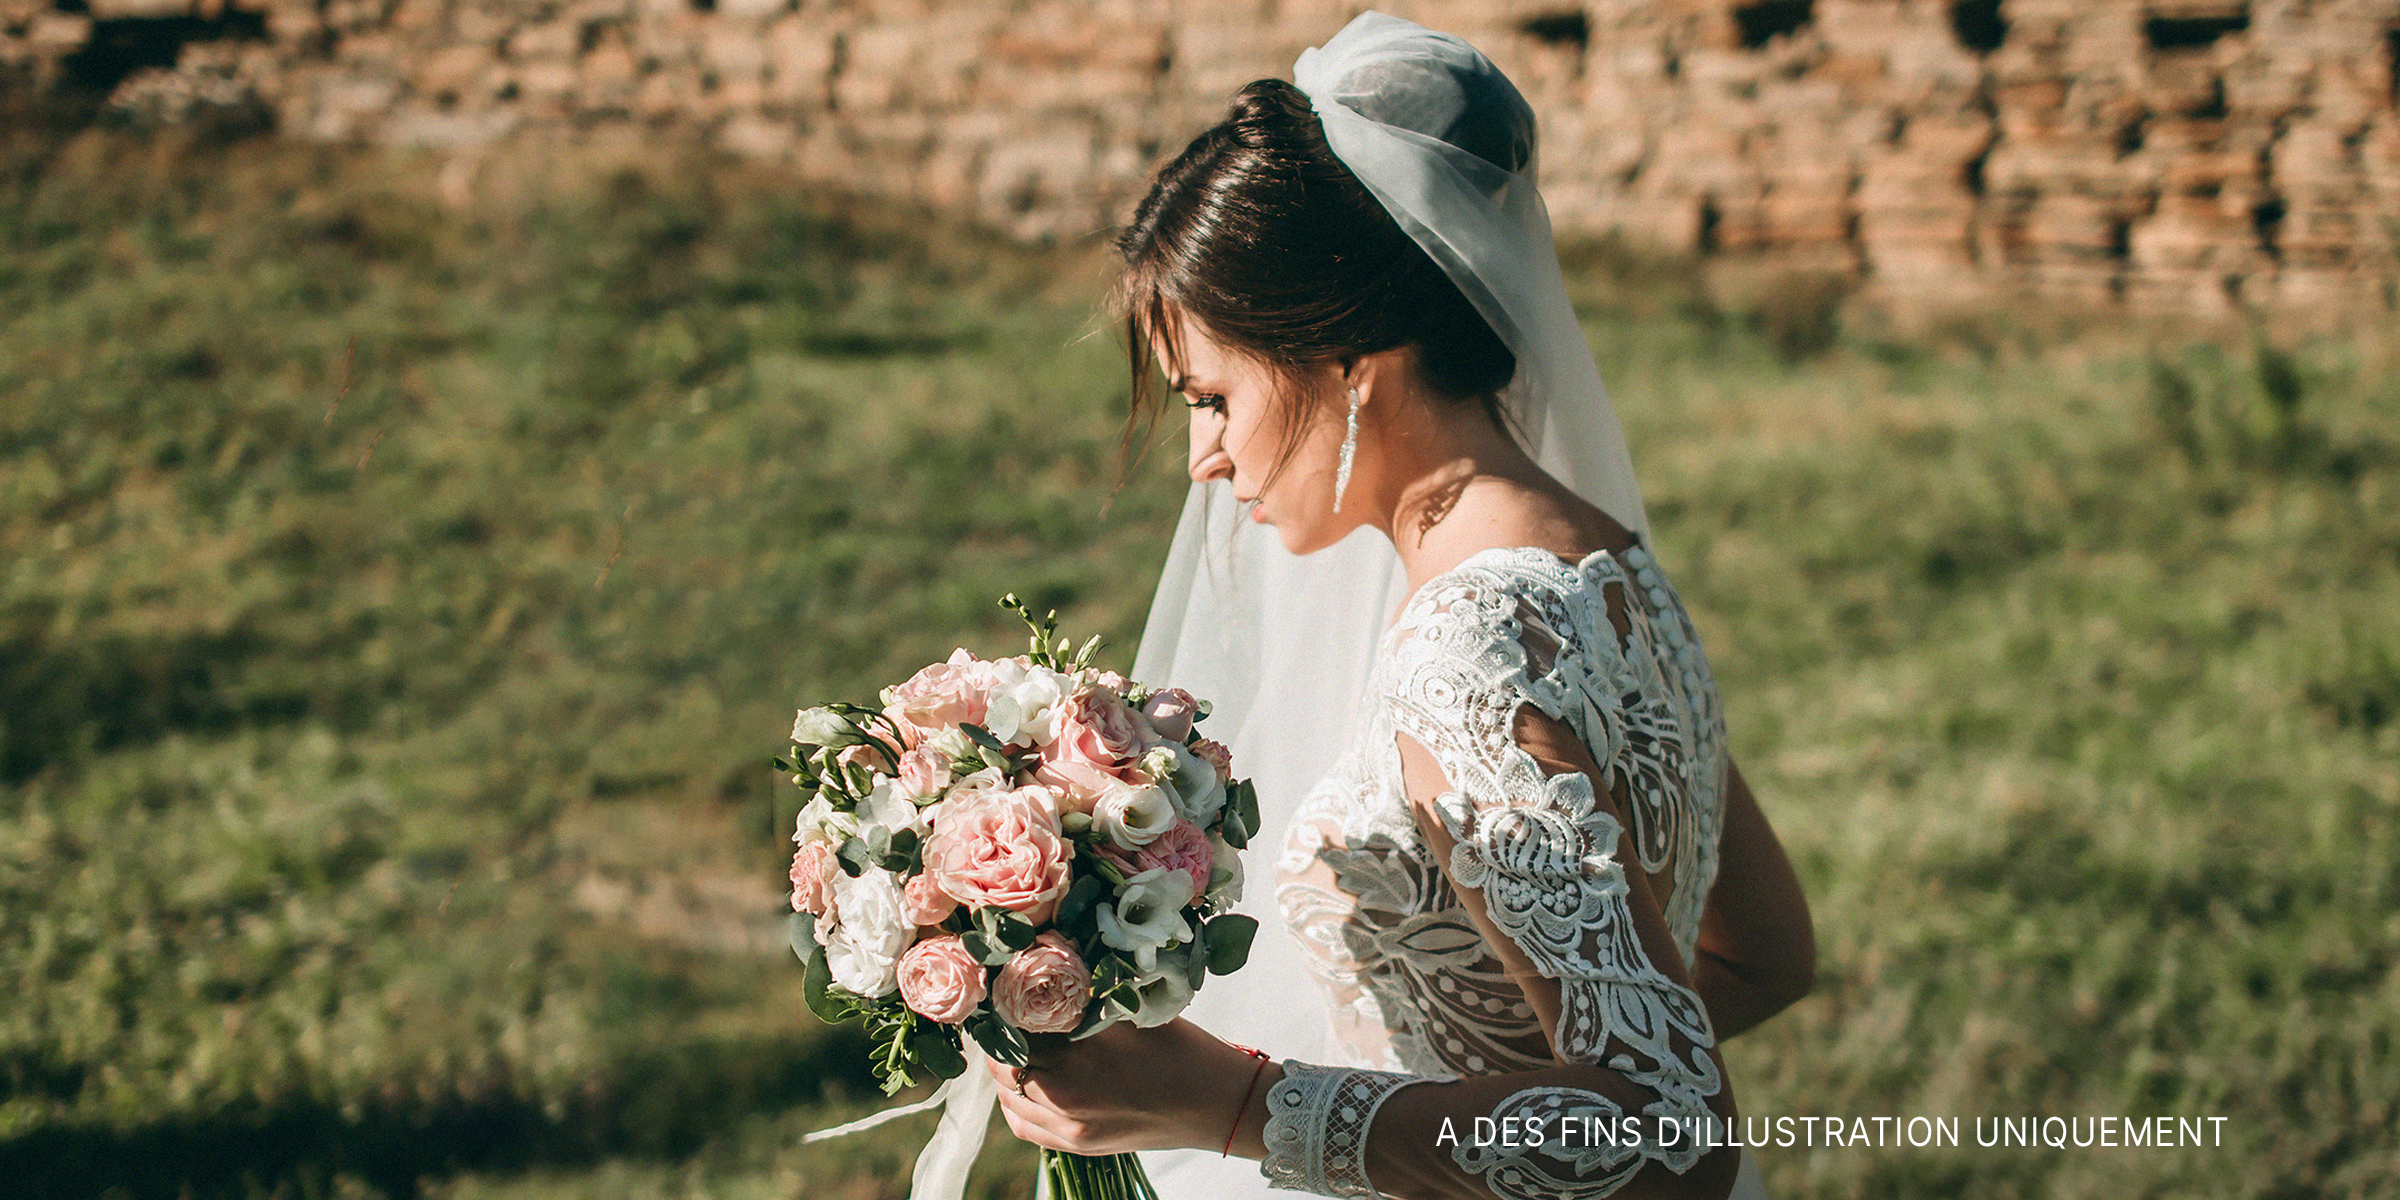 Une mariée tenant un bouquet | Source : Shuttertstock